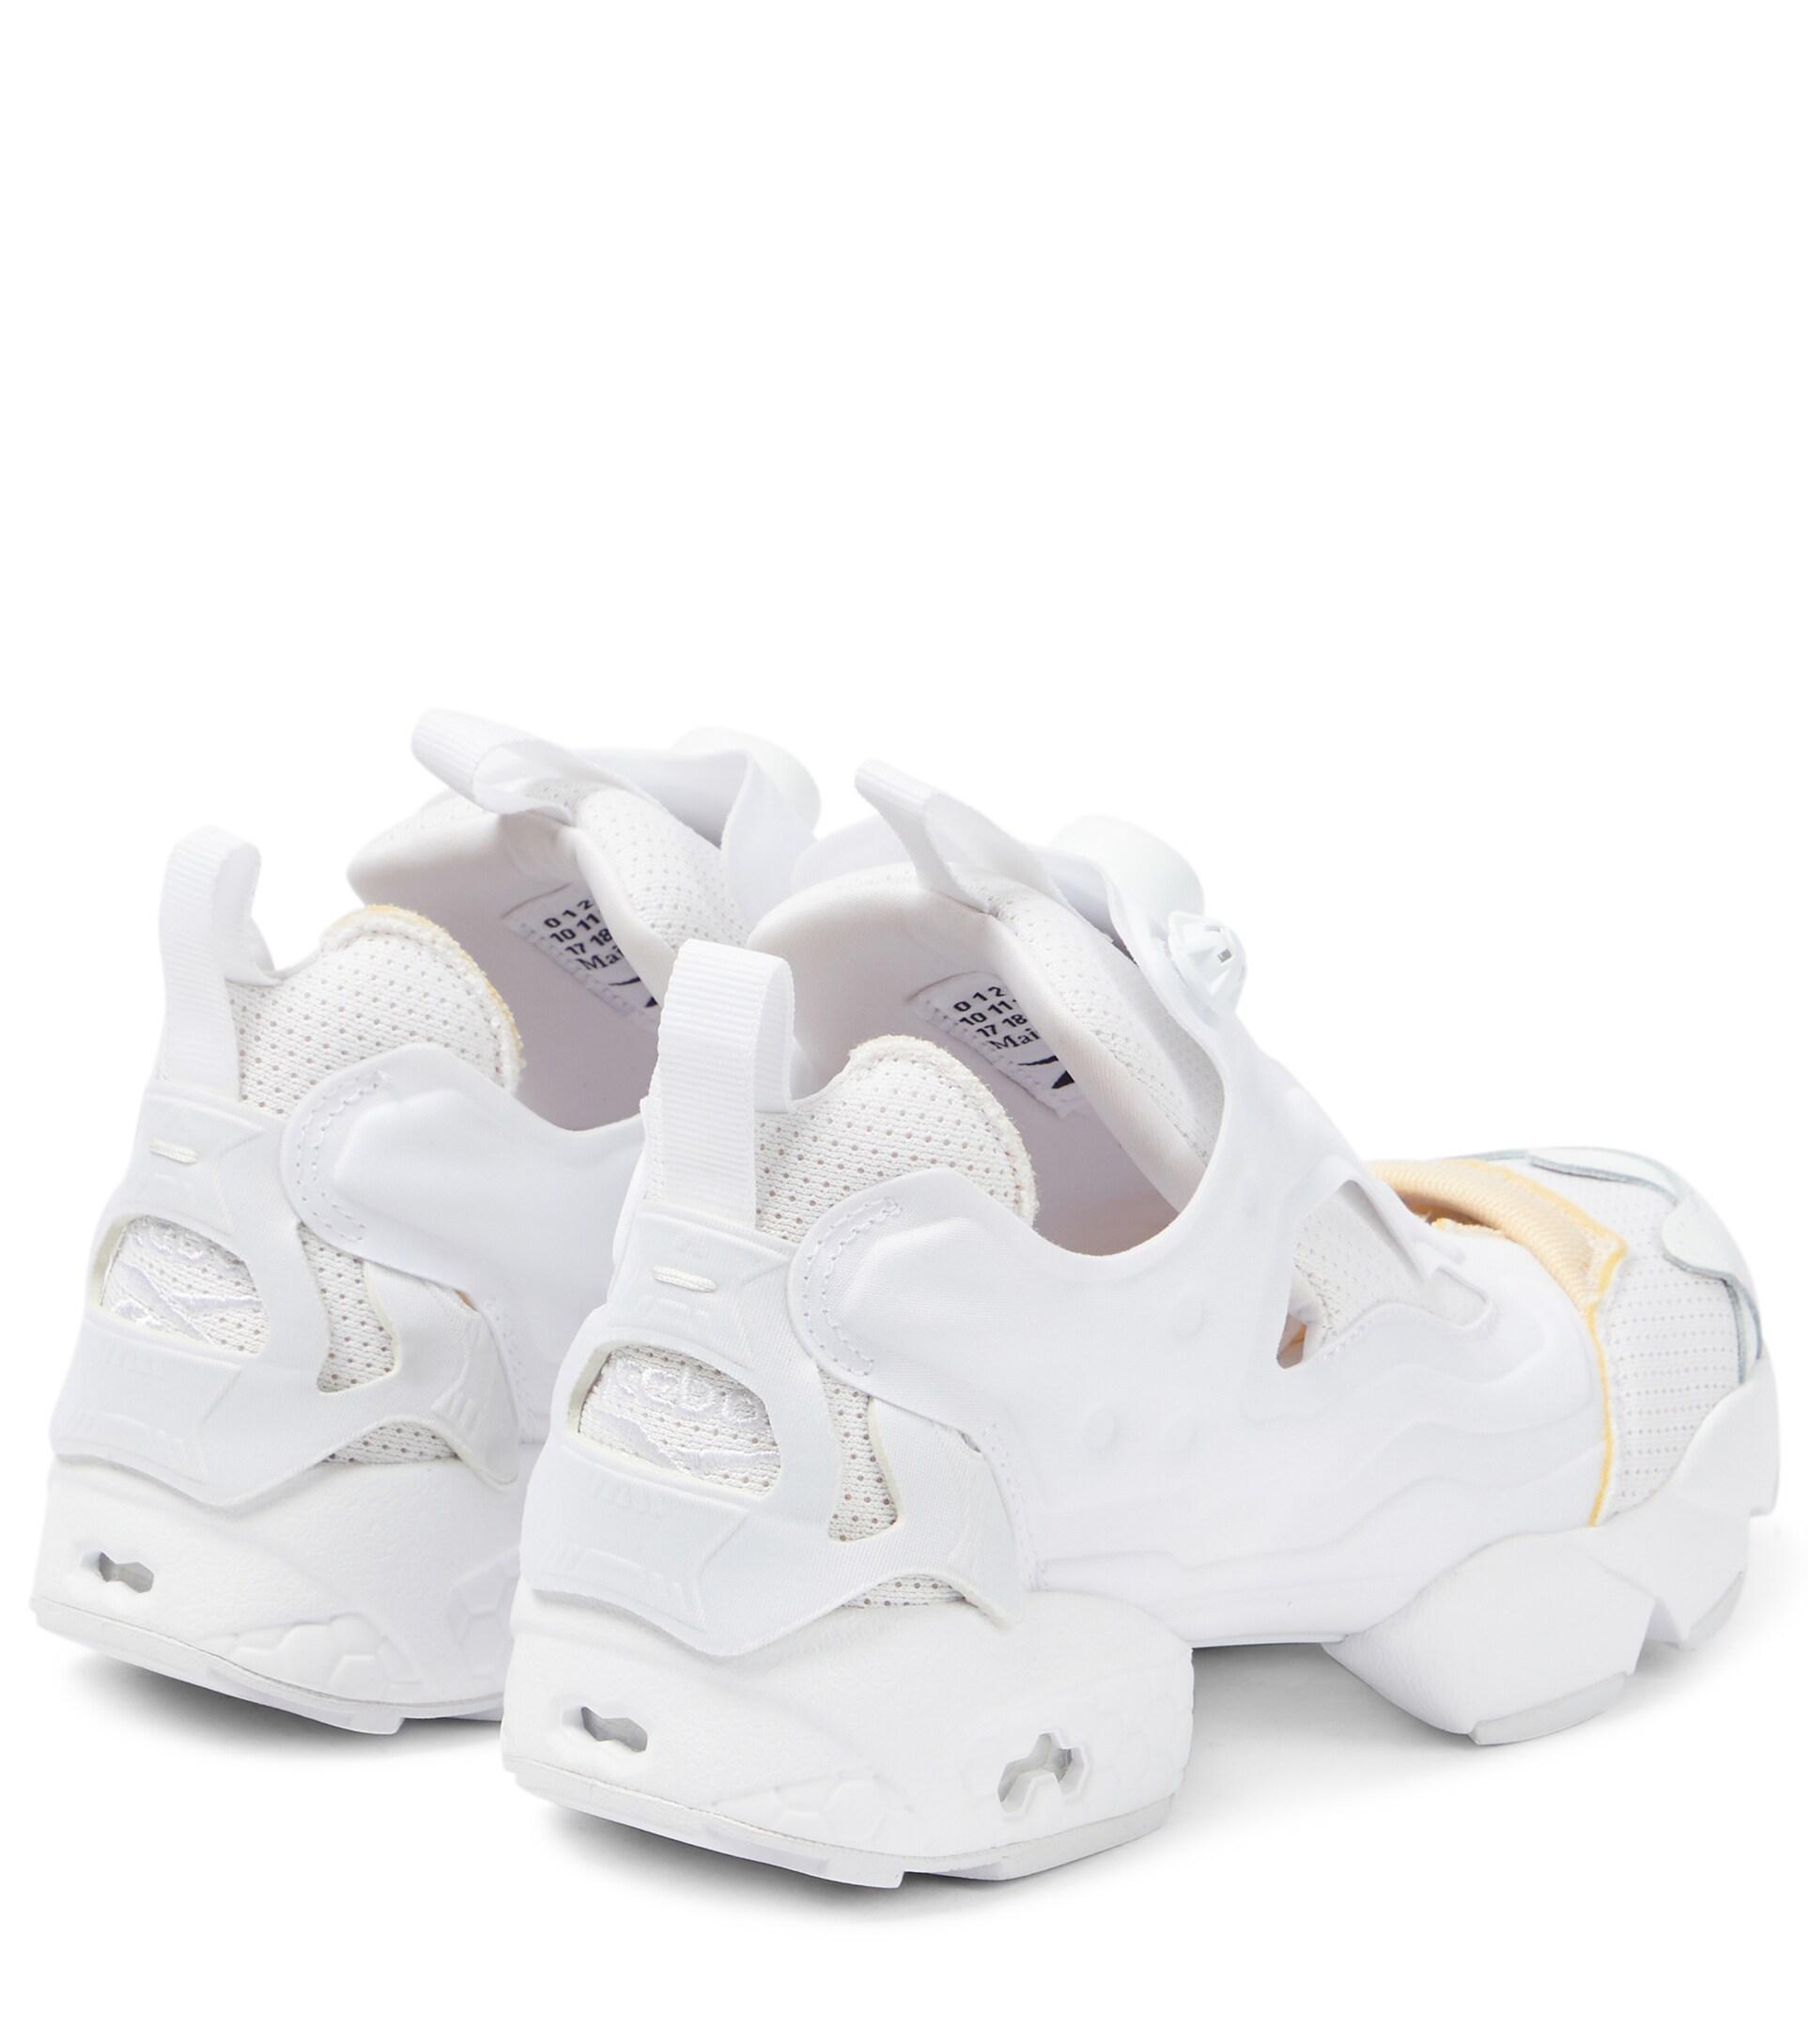 Maison Margiela X Reebok Instapump Fury Sneakers in White | Lyst